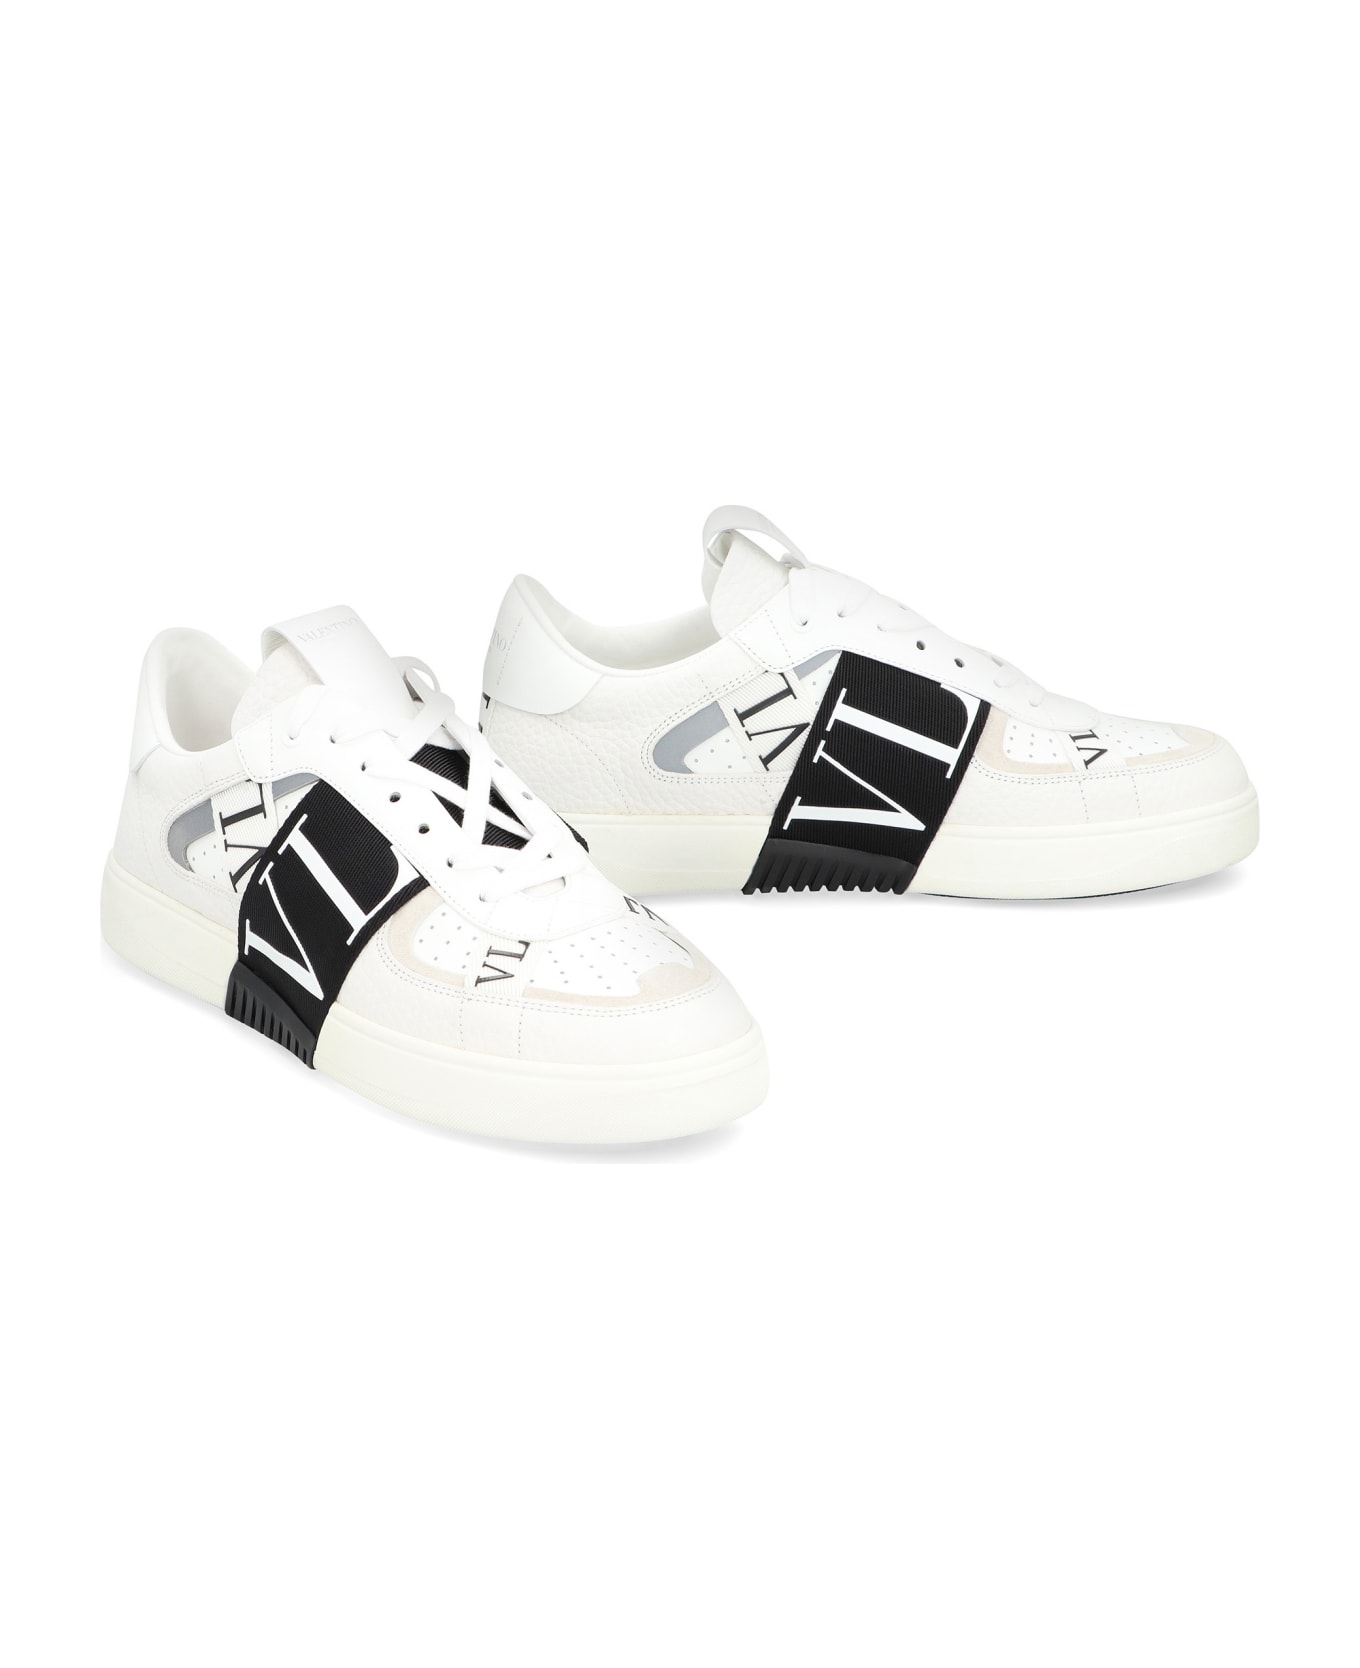 Valentino Garavani Garavani Vlnt Leather Sneakers - White スニーカー